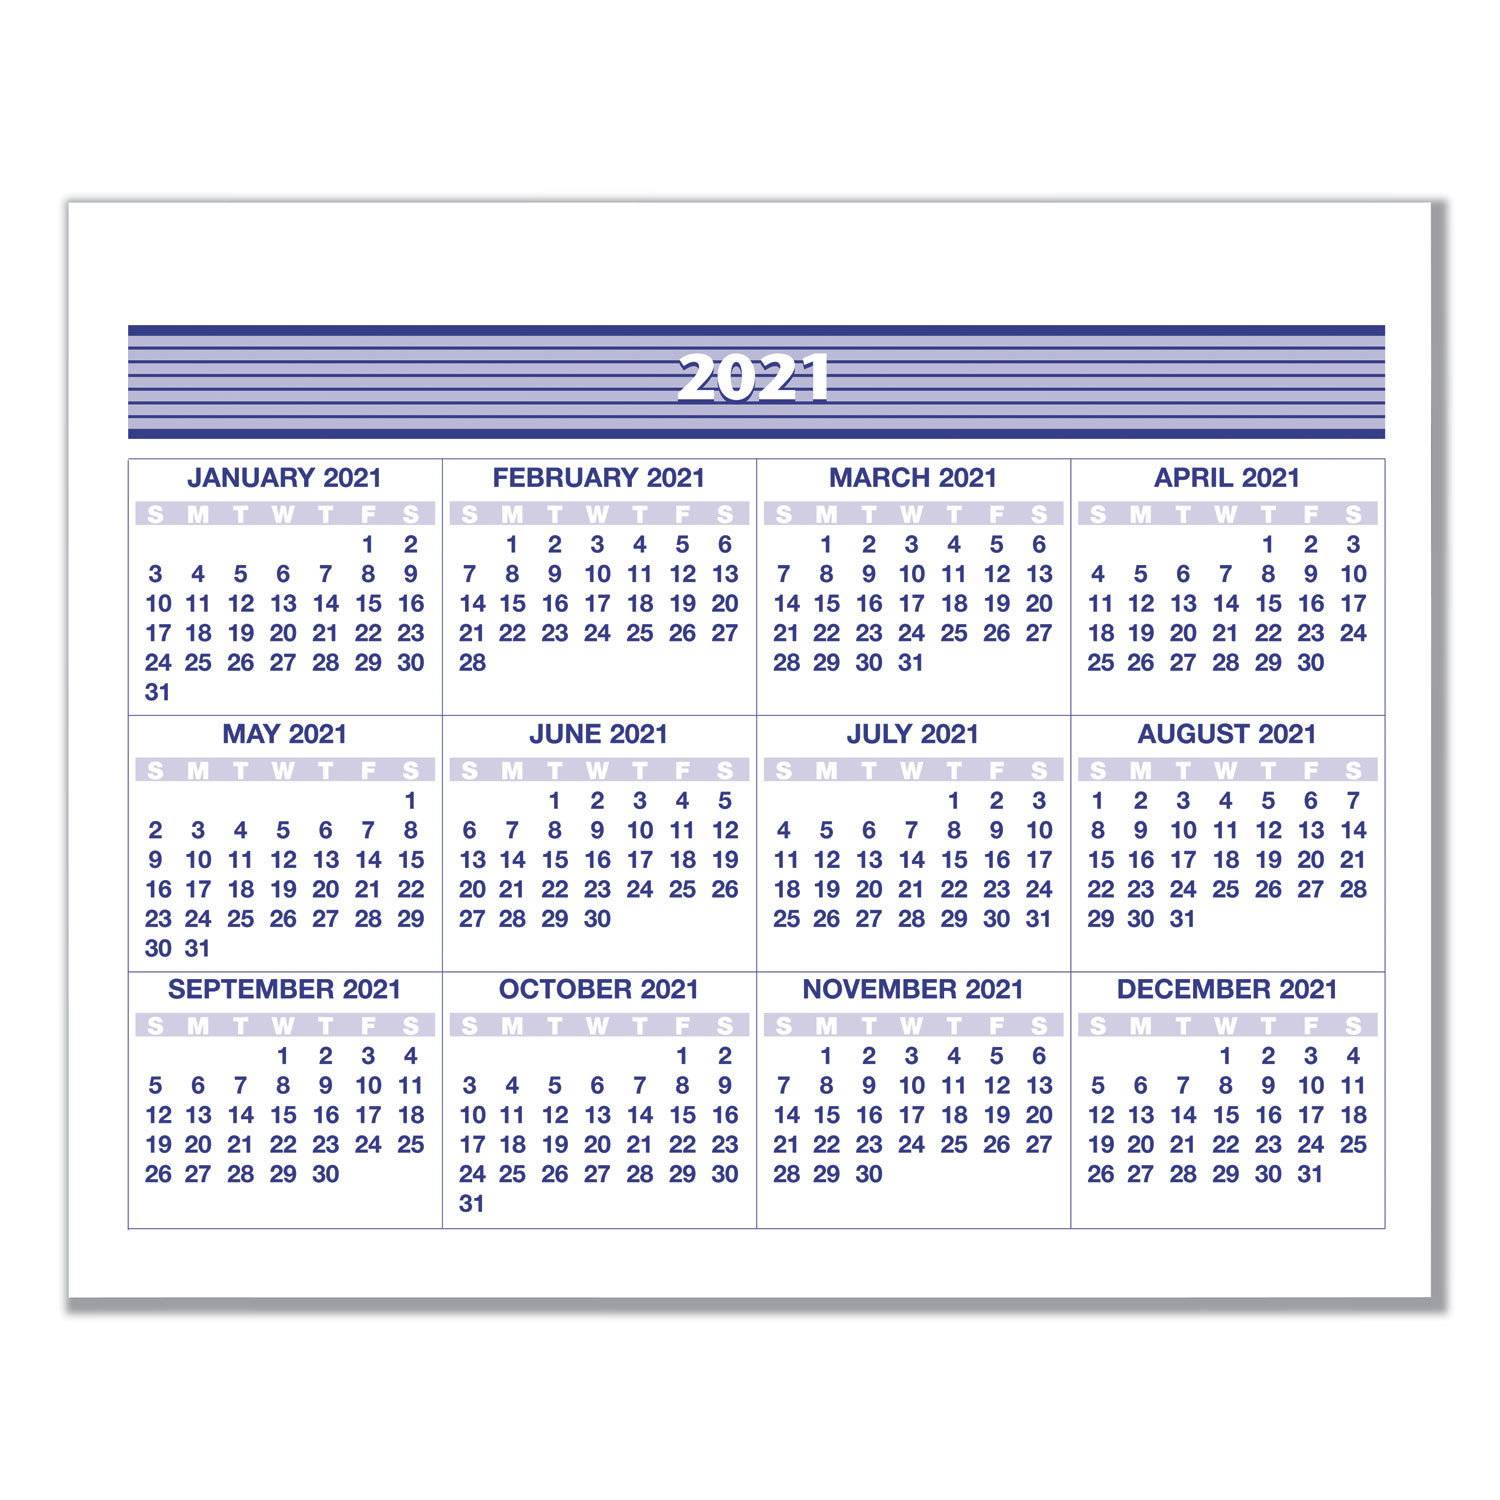 Wcpss Payroll Calendar 2020-19 | Payroll Calendar 2020-April 2021 Payroll Calender